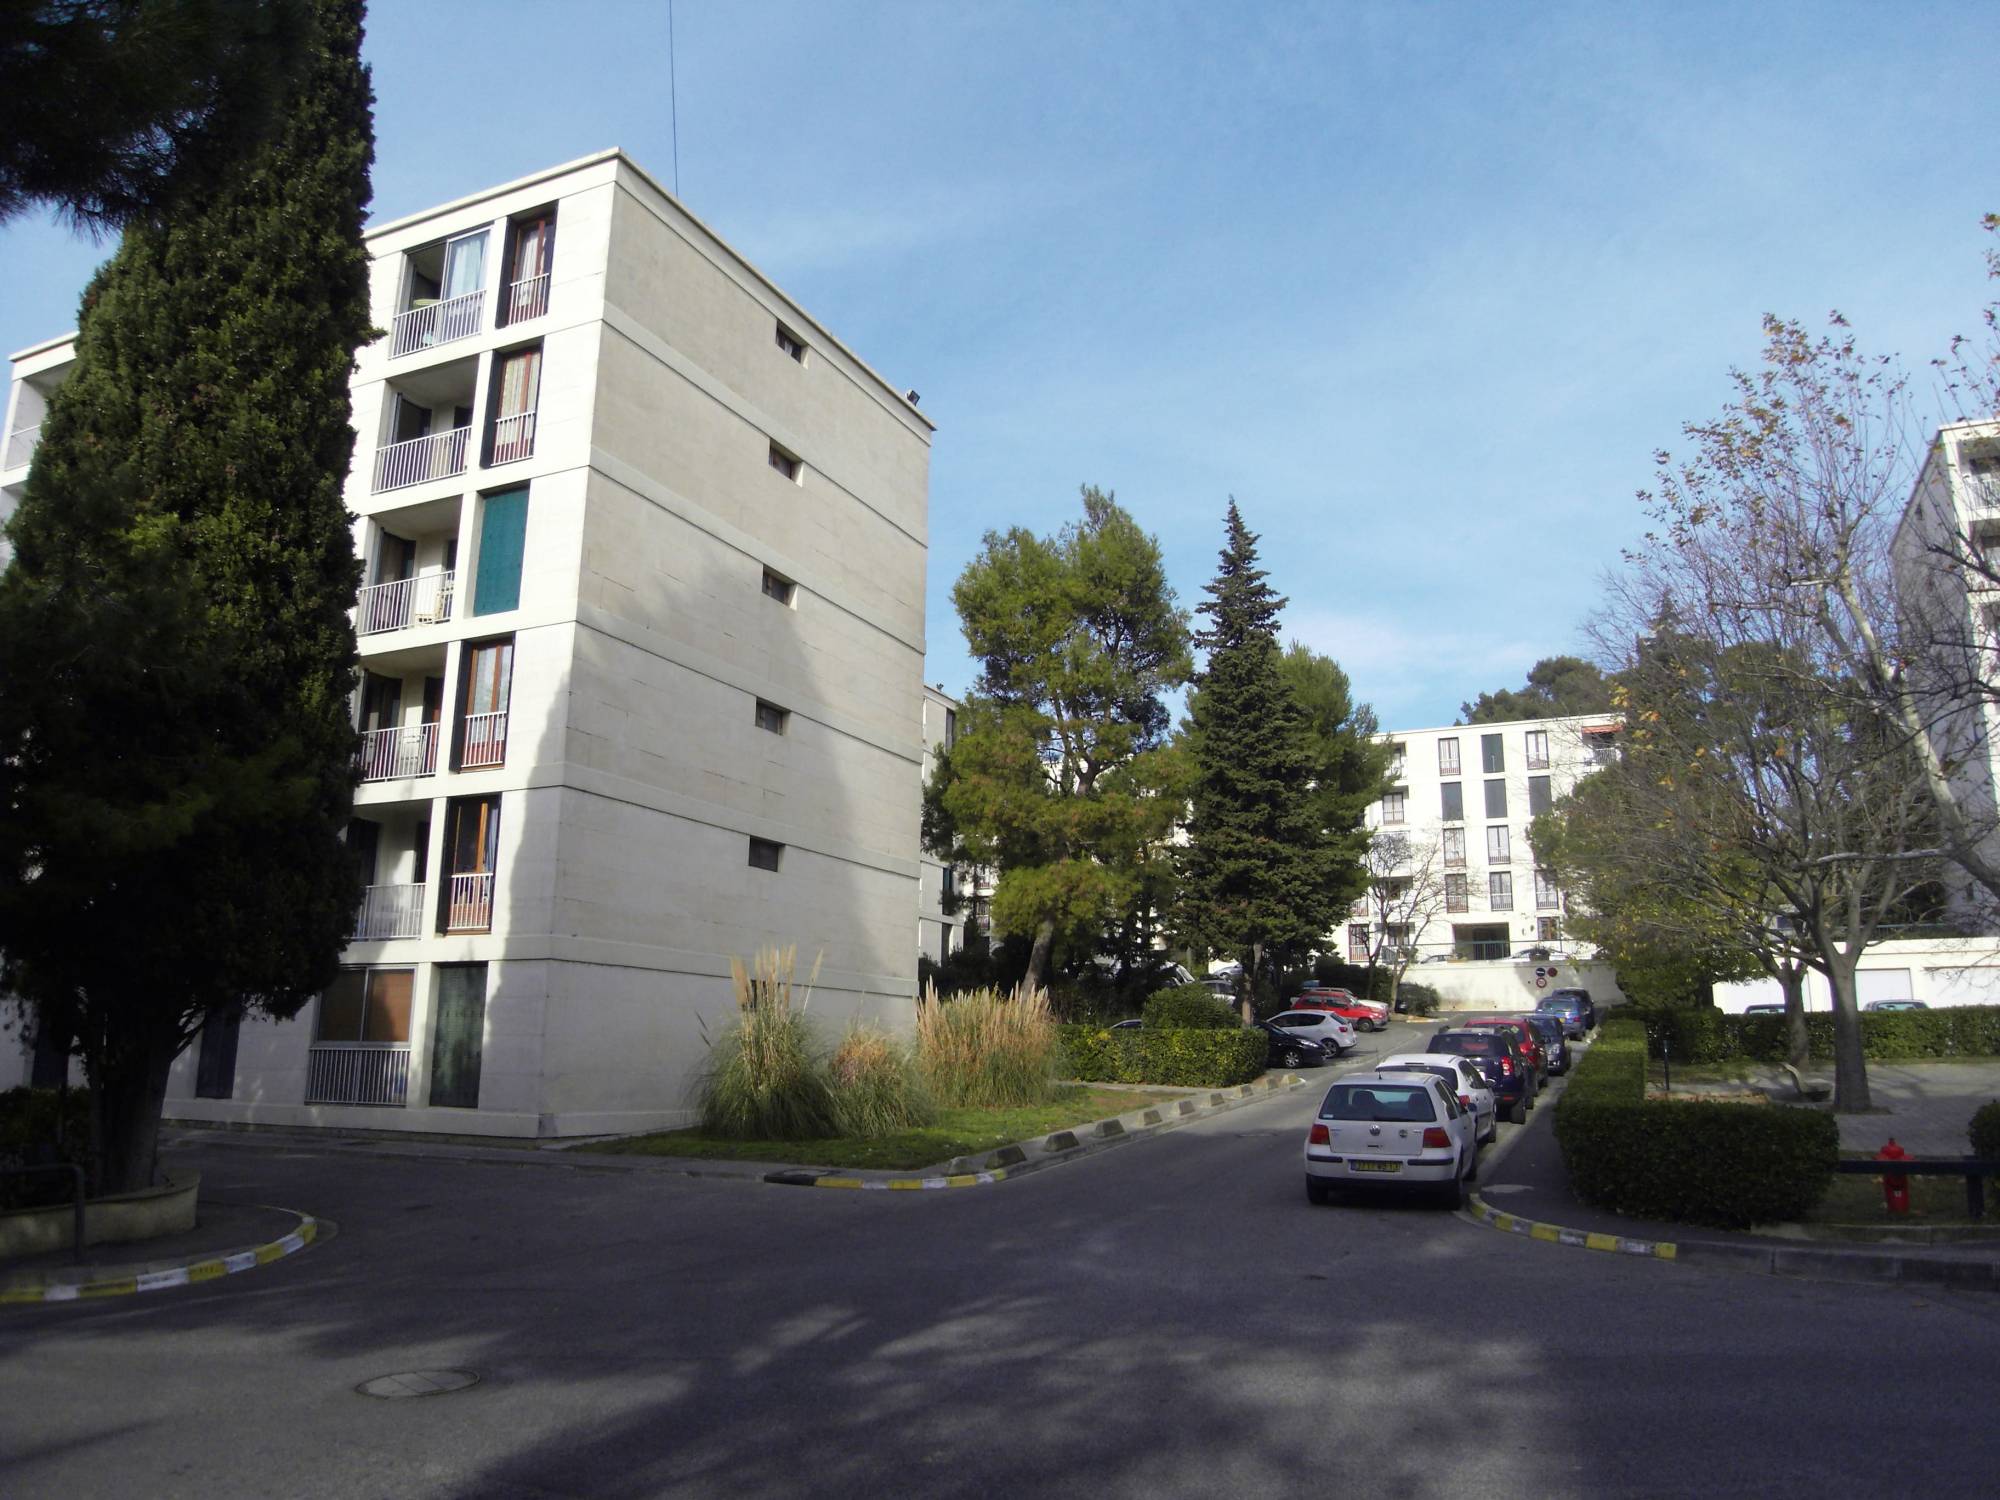 A vendre appartement 3 pièces de 71 m² avec balcons, cave et stationnement facile dans résidence fermée La Pounche 13190 ALLAUCH